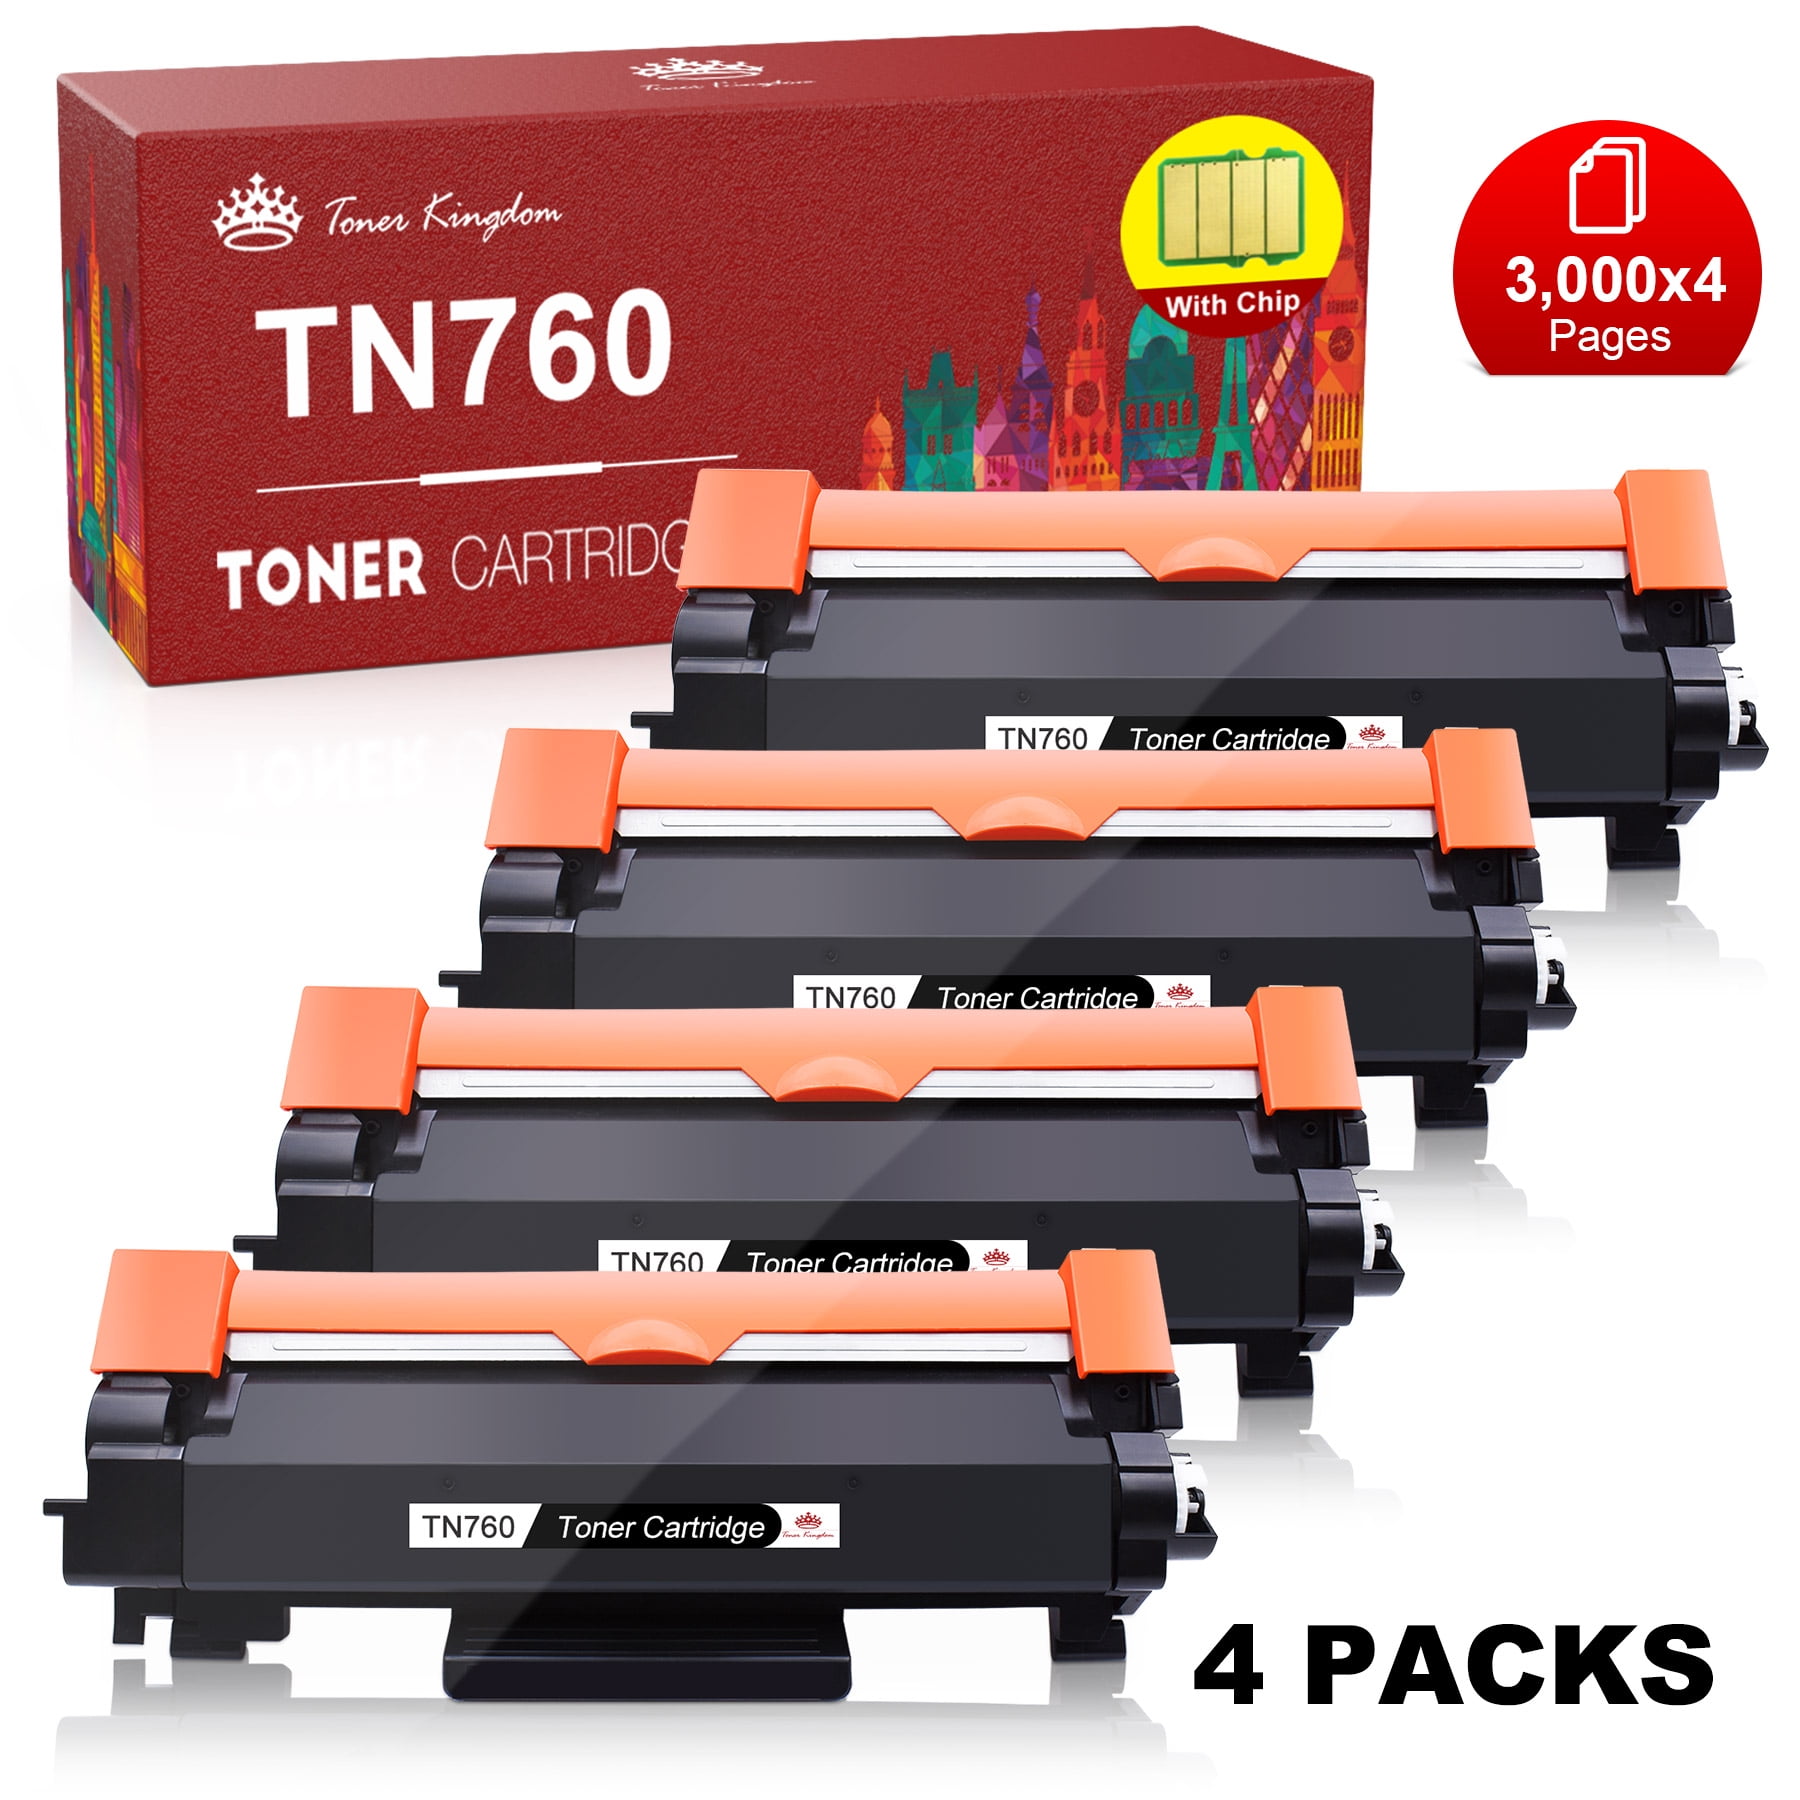 TN760 Toner Cartridge Brother TN 760 TN730 TN 730 for HL-L2395DW L2350DW L2730DW L2370DW MFC-L2710DW L2750DW HL-L2390DW L2325DW(Black,1 Pack) - Walmart.com